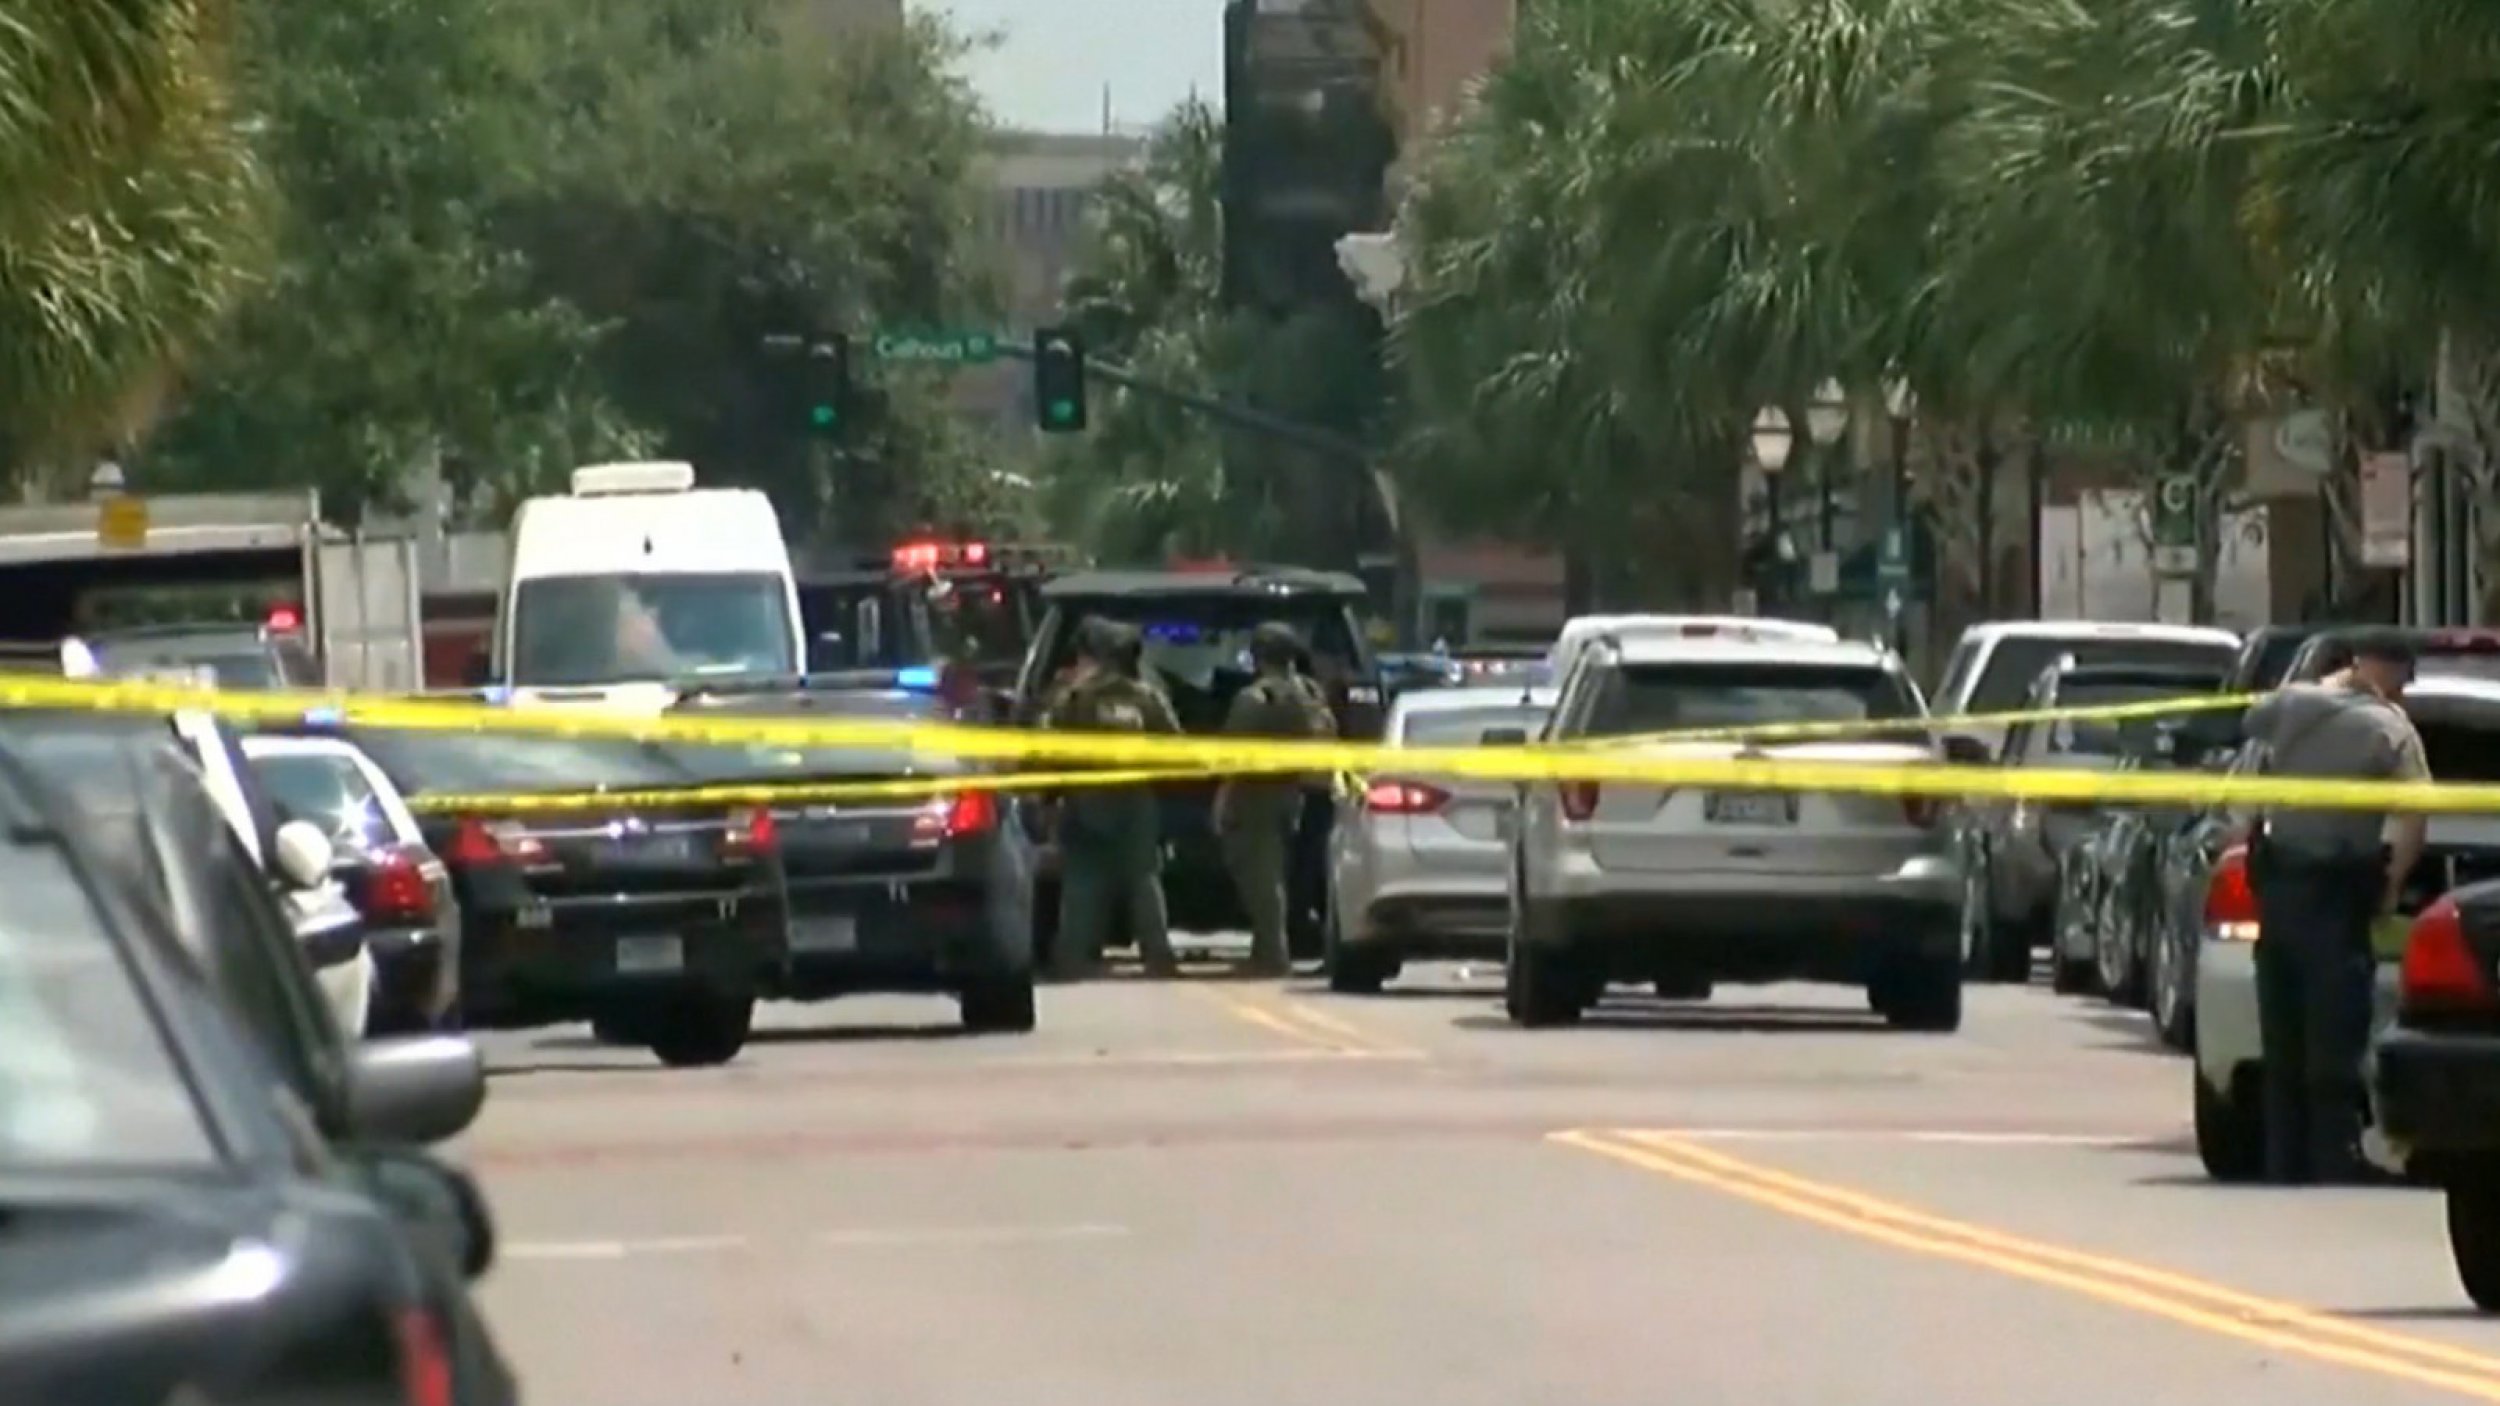 Gunman Shot After Hostage Drama in Charleston, South Carolina